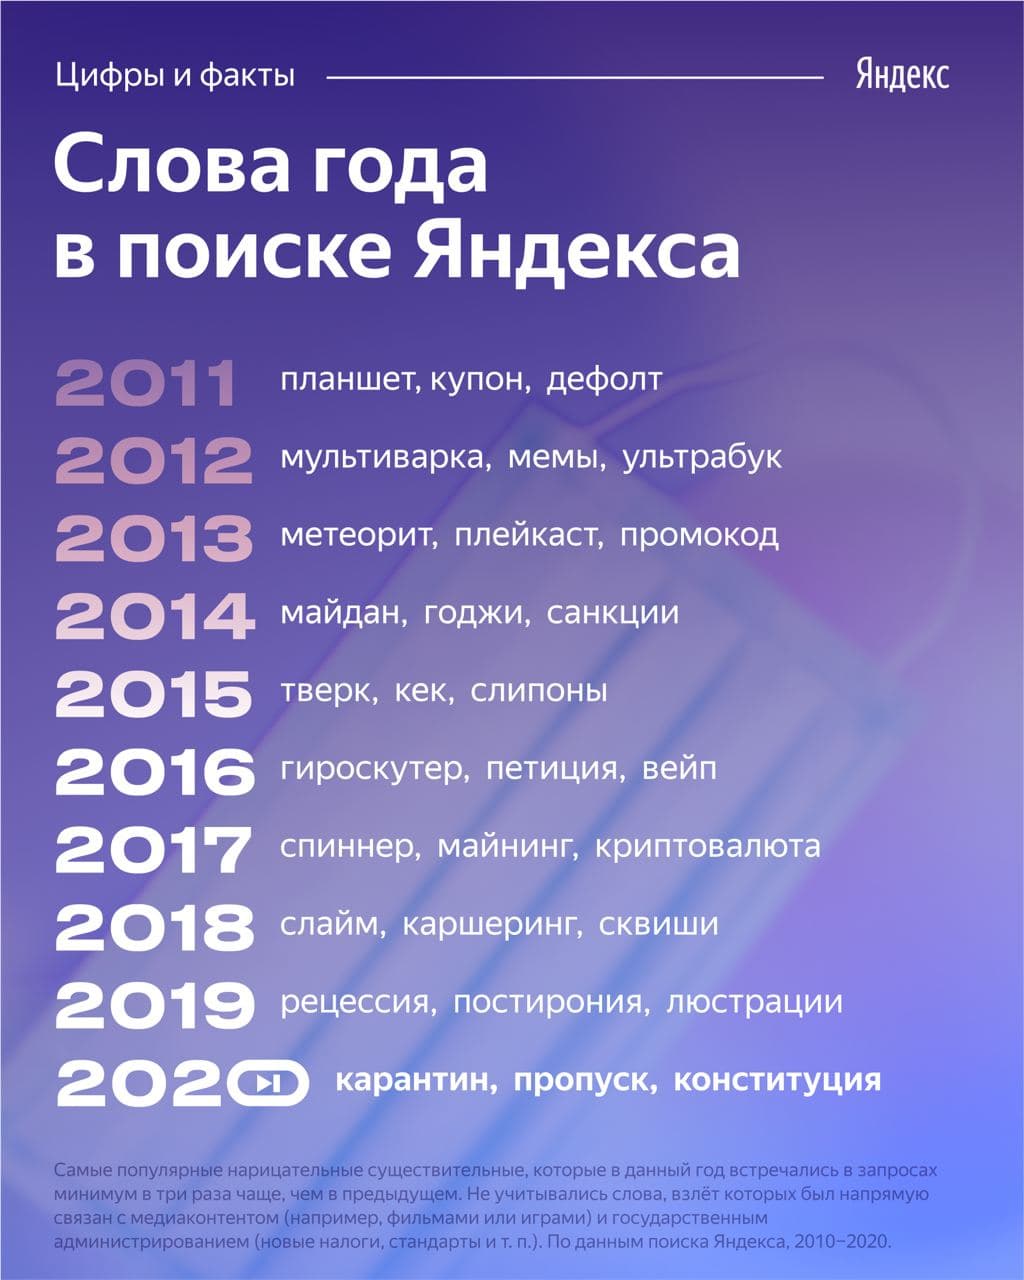 «Яндекс» назвал популярные слова в поиске в 2020-м